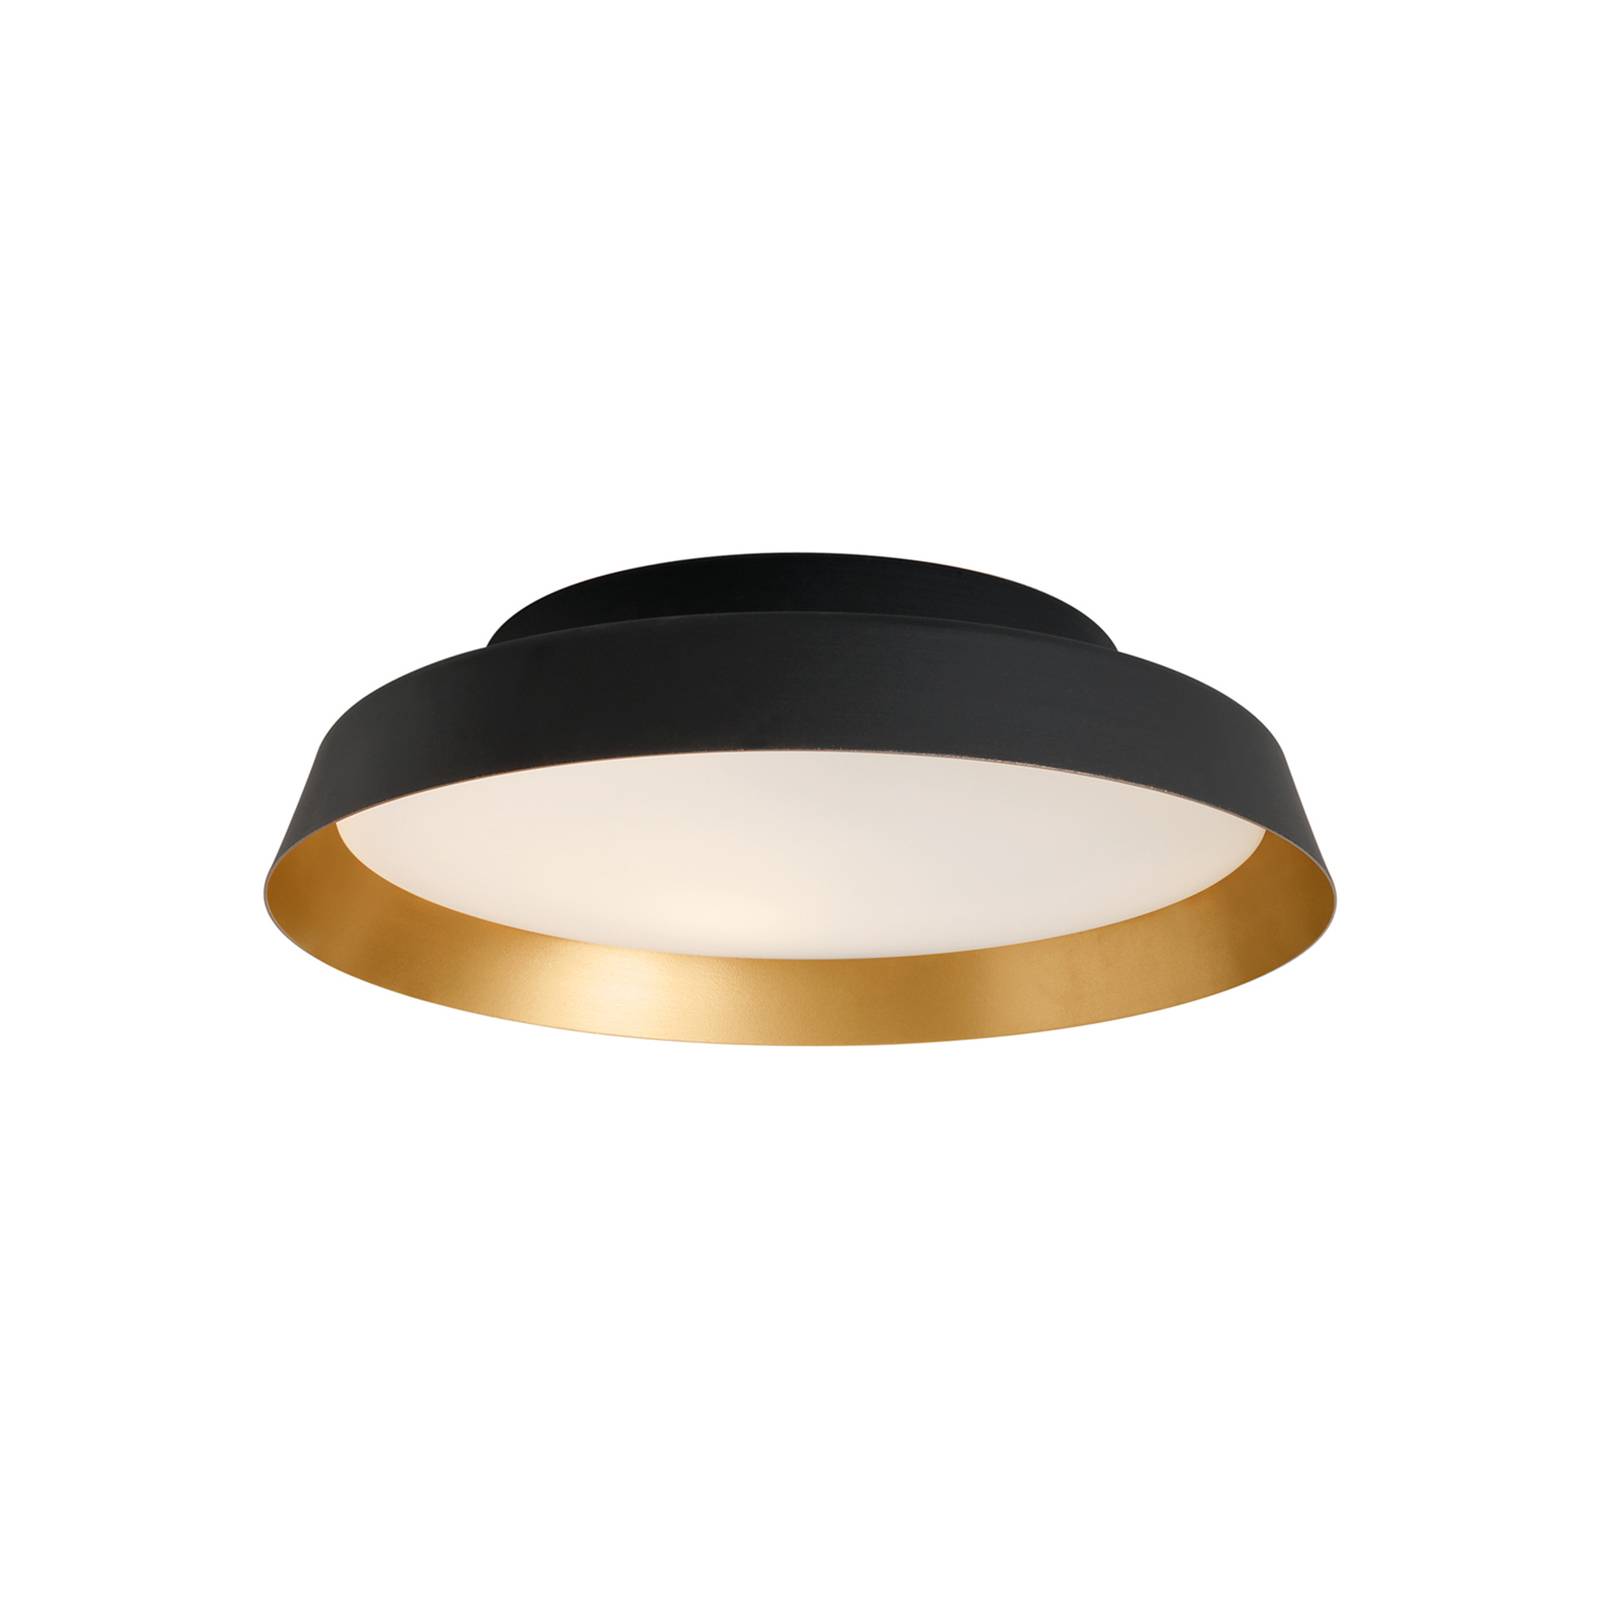 LED mennyezeti világítás Boop! Ø54 cm fekete/arany